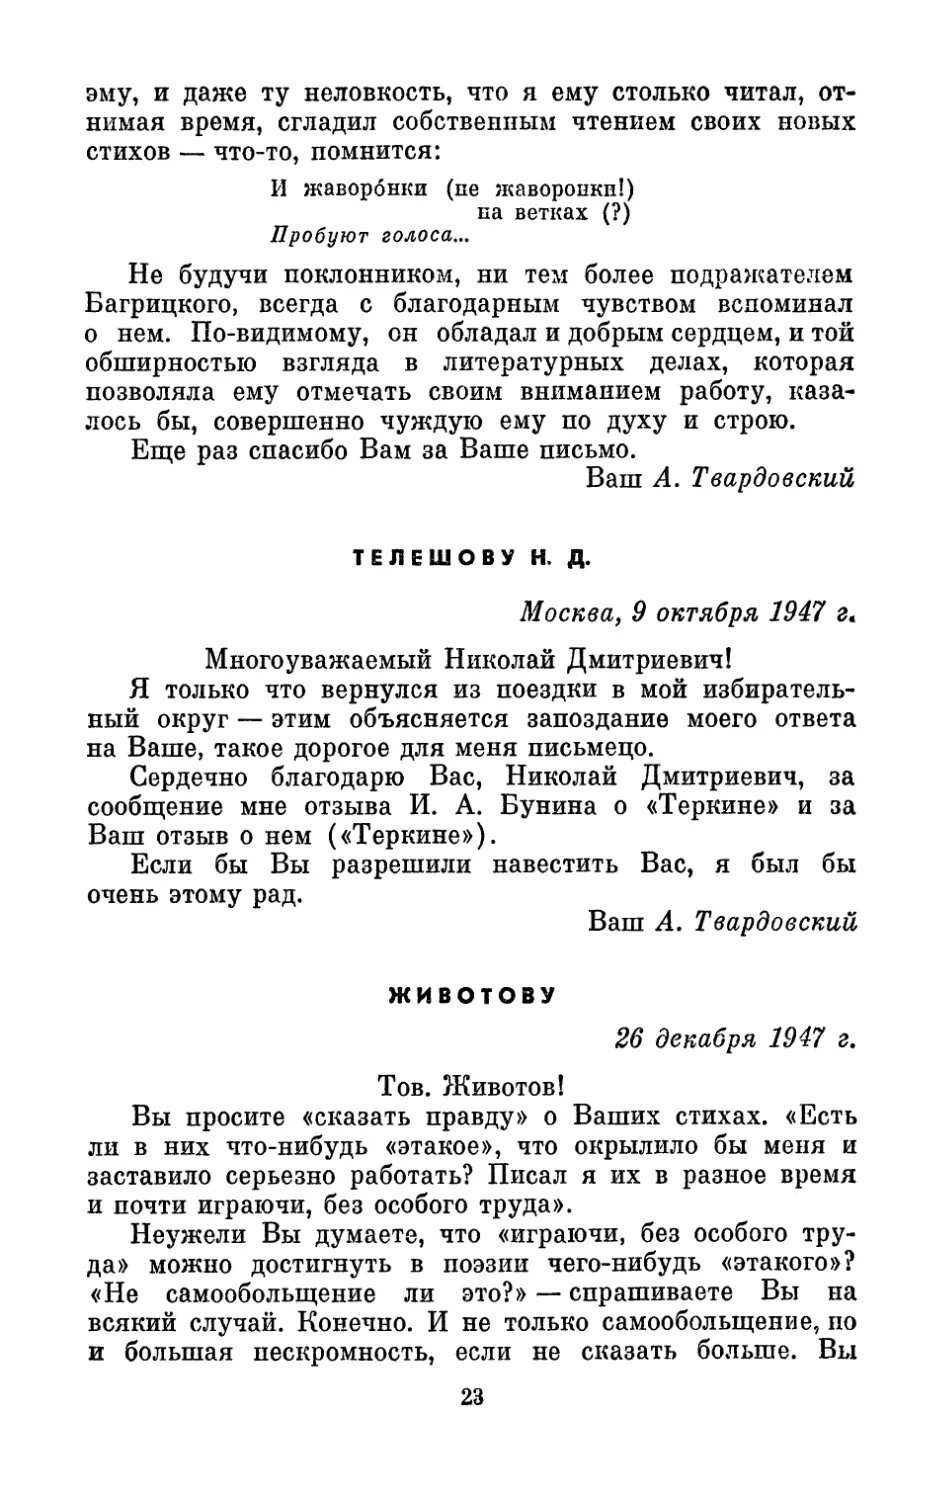 Телешову Н. Д., 9 октября 1947 г.
Животову, 26 декабря 1947 г.